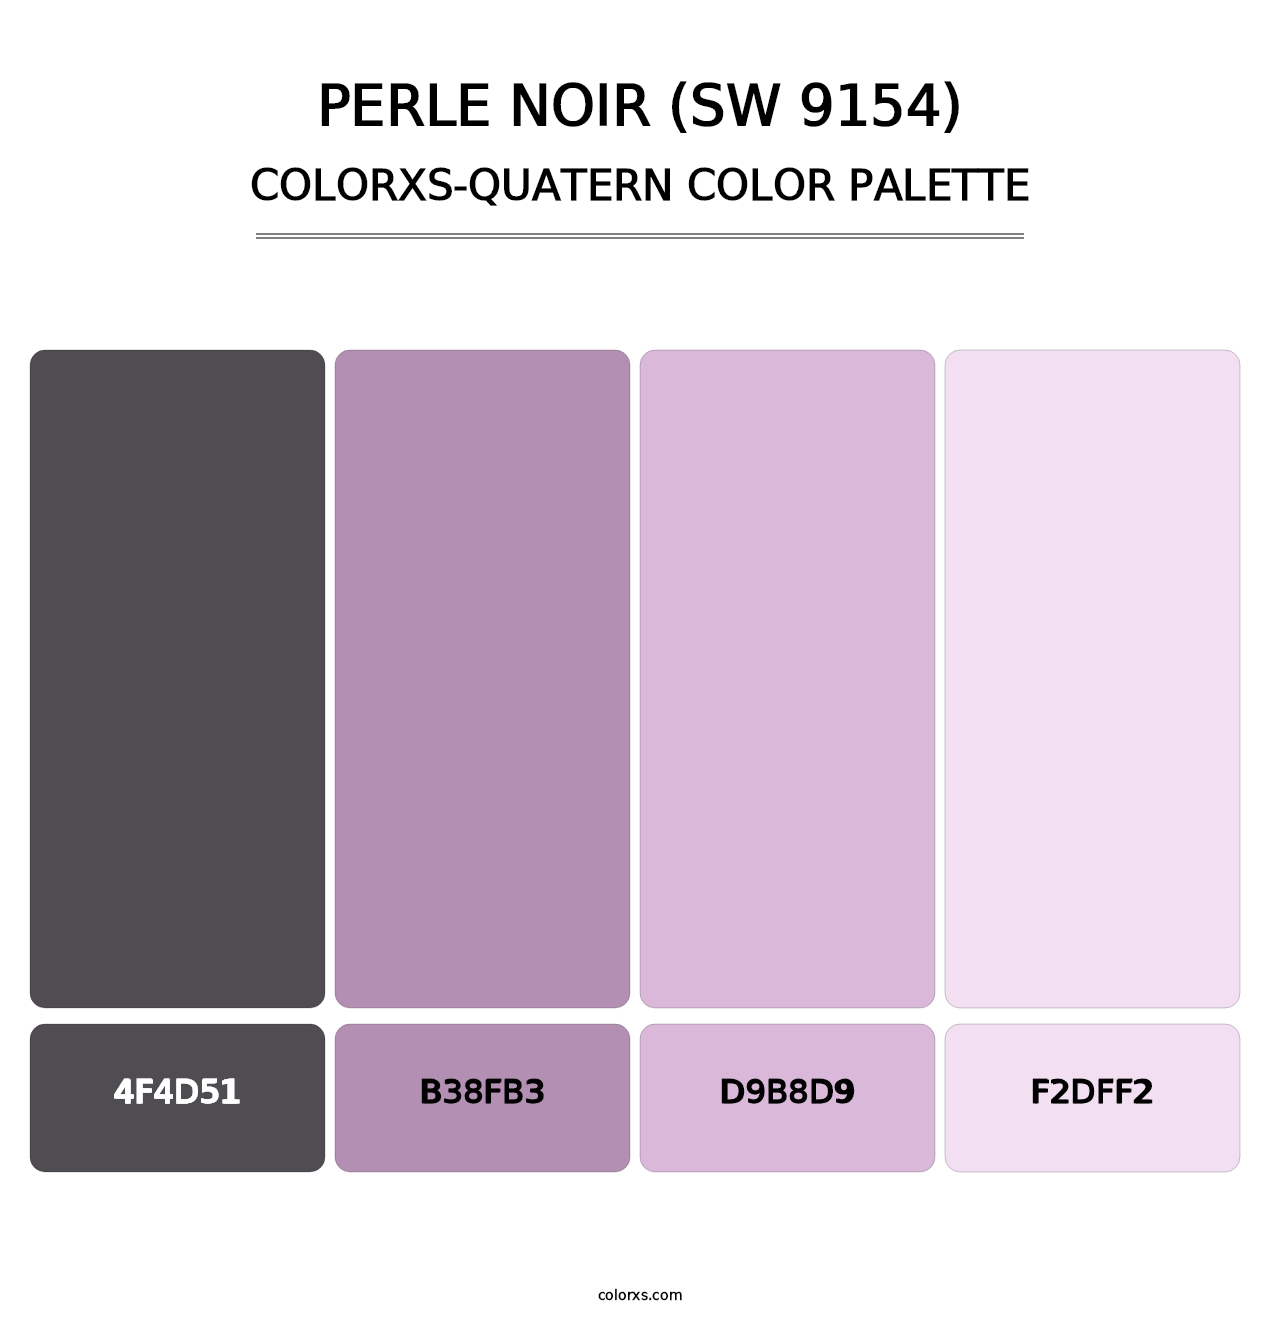 Perle Noir (SW 9154) - Colorxs Quatern Palette